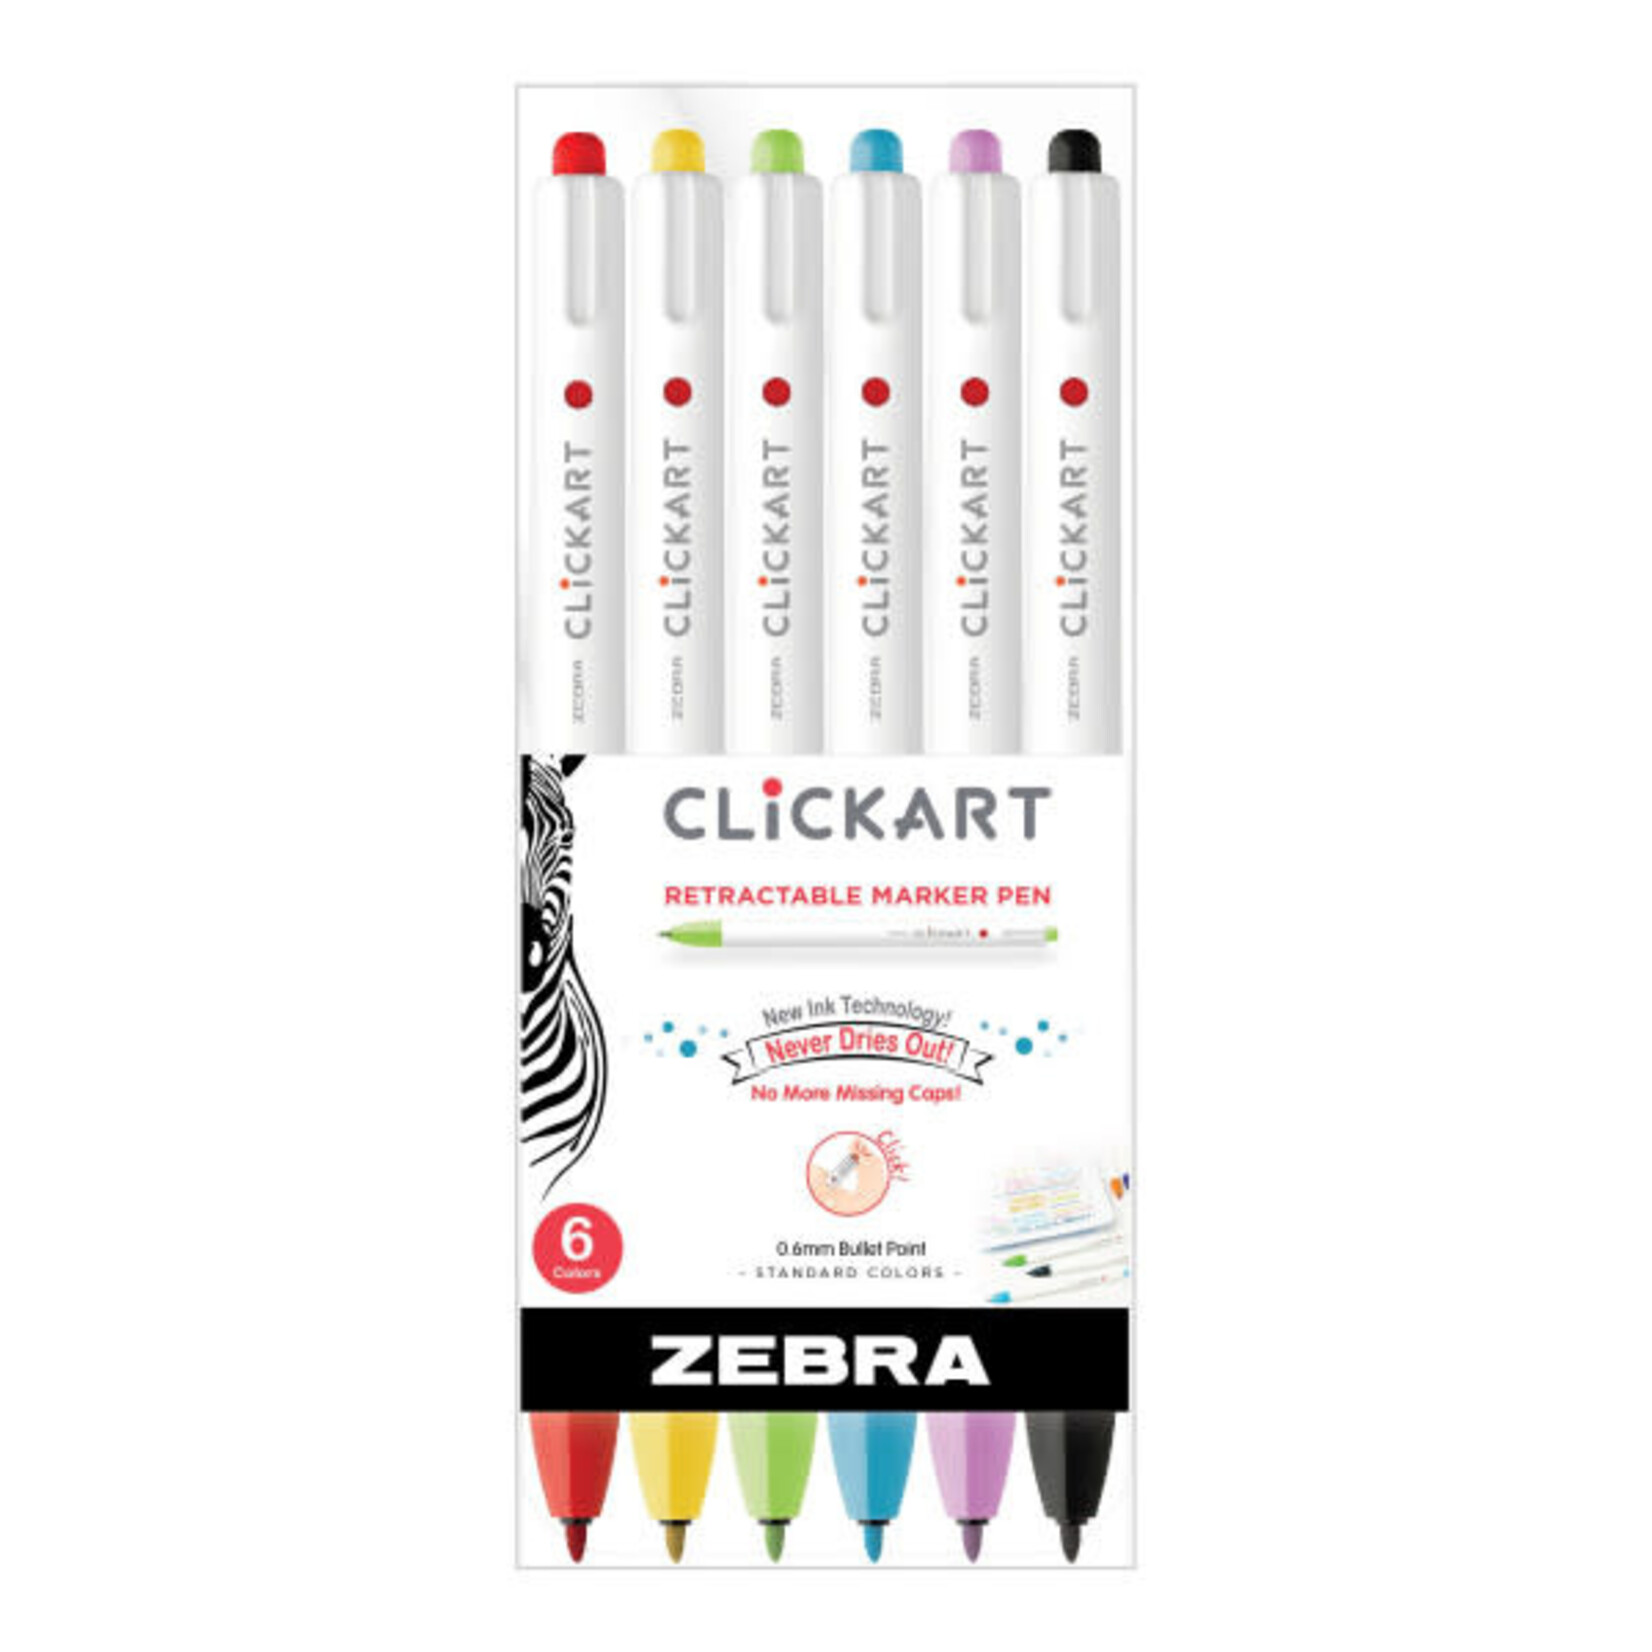 Zebra ClickArt Retractable Marker Pen Sets, 6-Pen Set - Assorted Colors